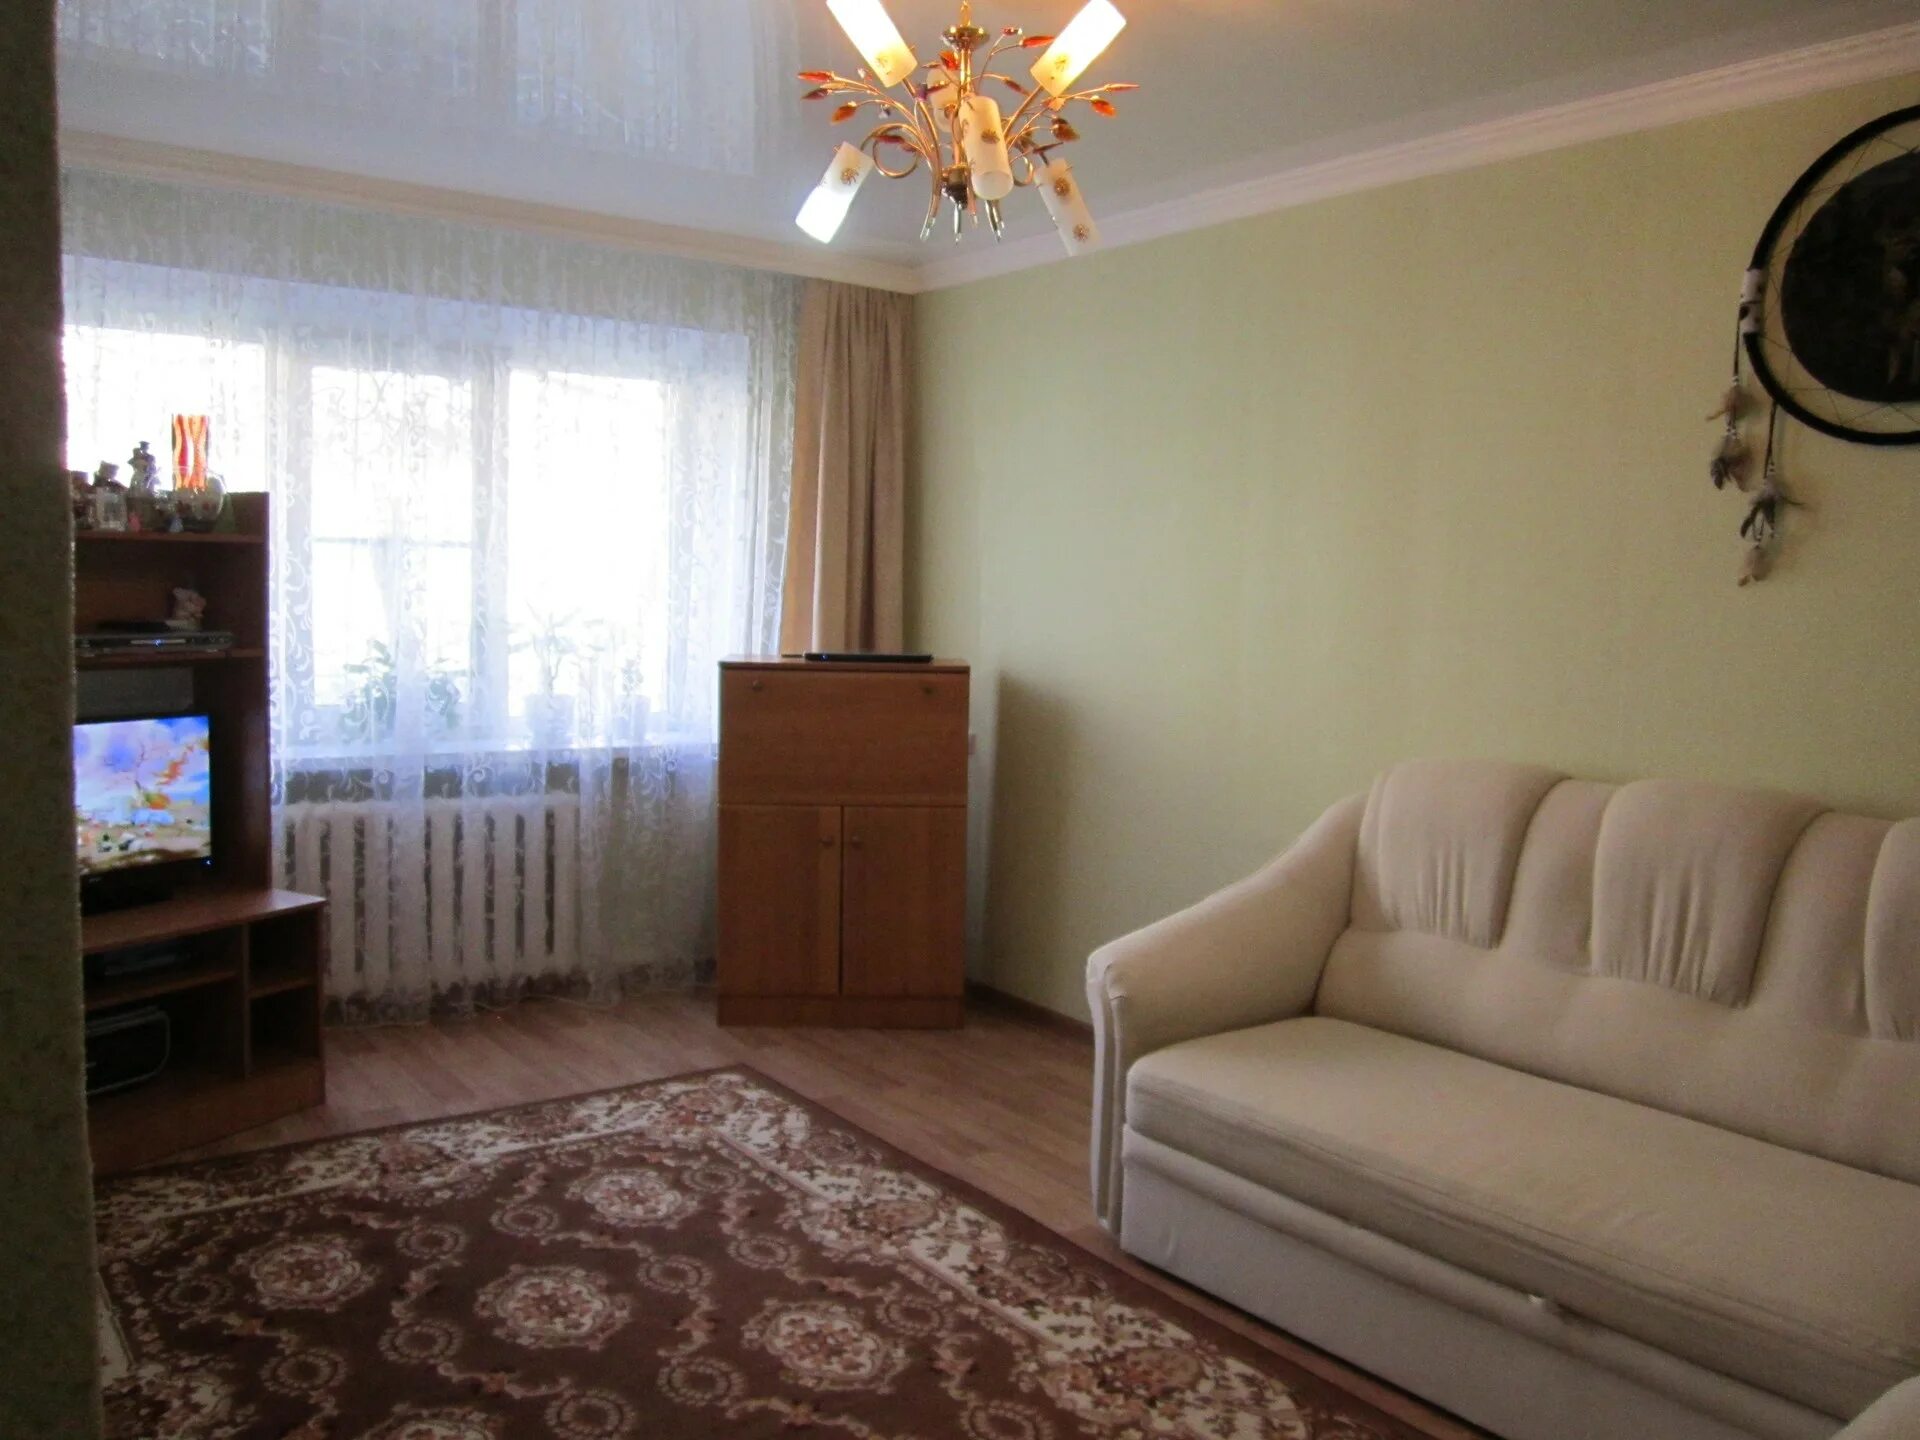 Квартиры в Ставрополе. 3-Х комнатная квартира Ставрополь. Квартиры в Ставрополе недорогие. Ставрополь жилье.